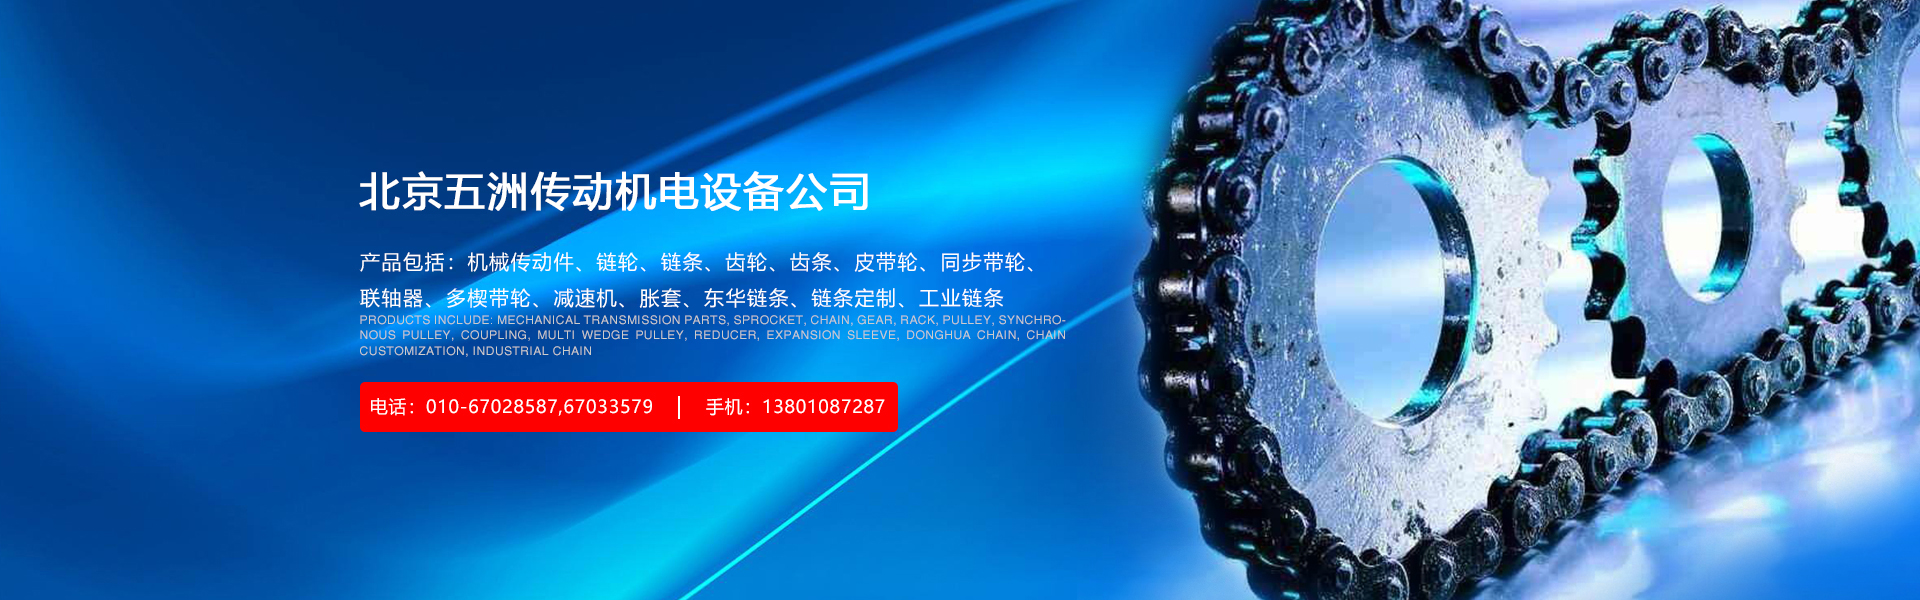 北京五洲传动机电设备有限公司